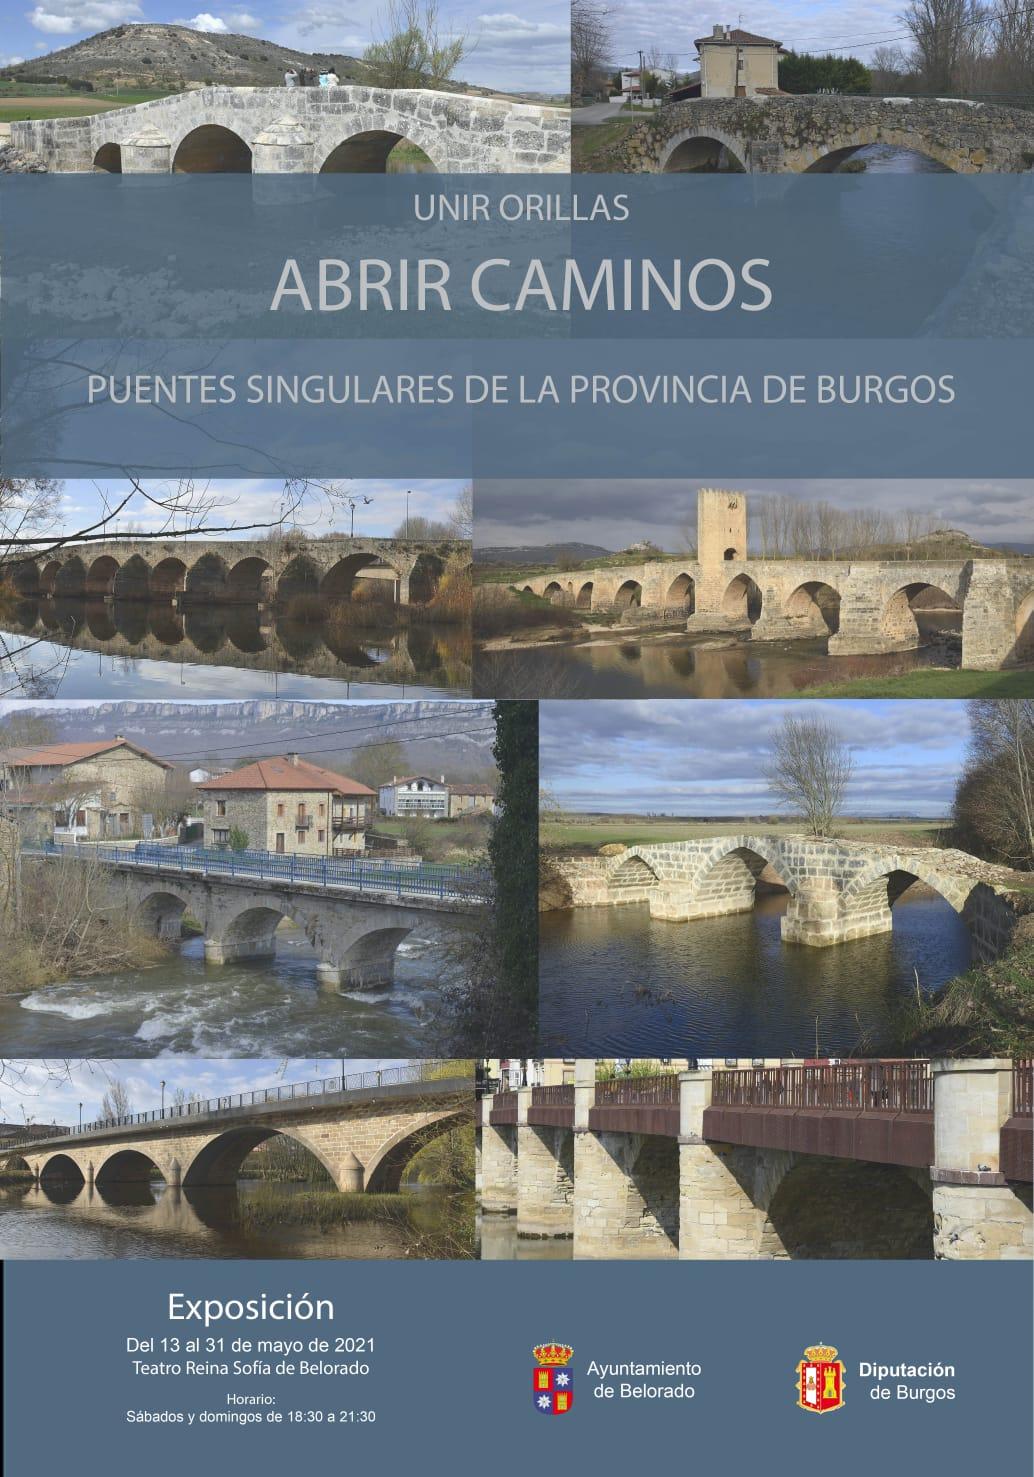 Exposición. Puentes singulares de la provincia de Burgos